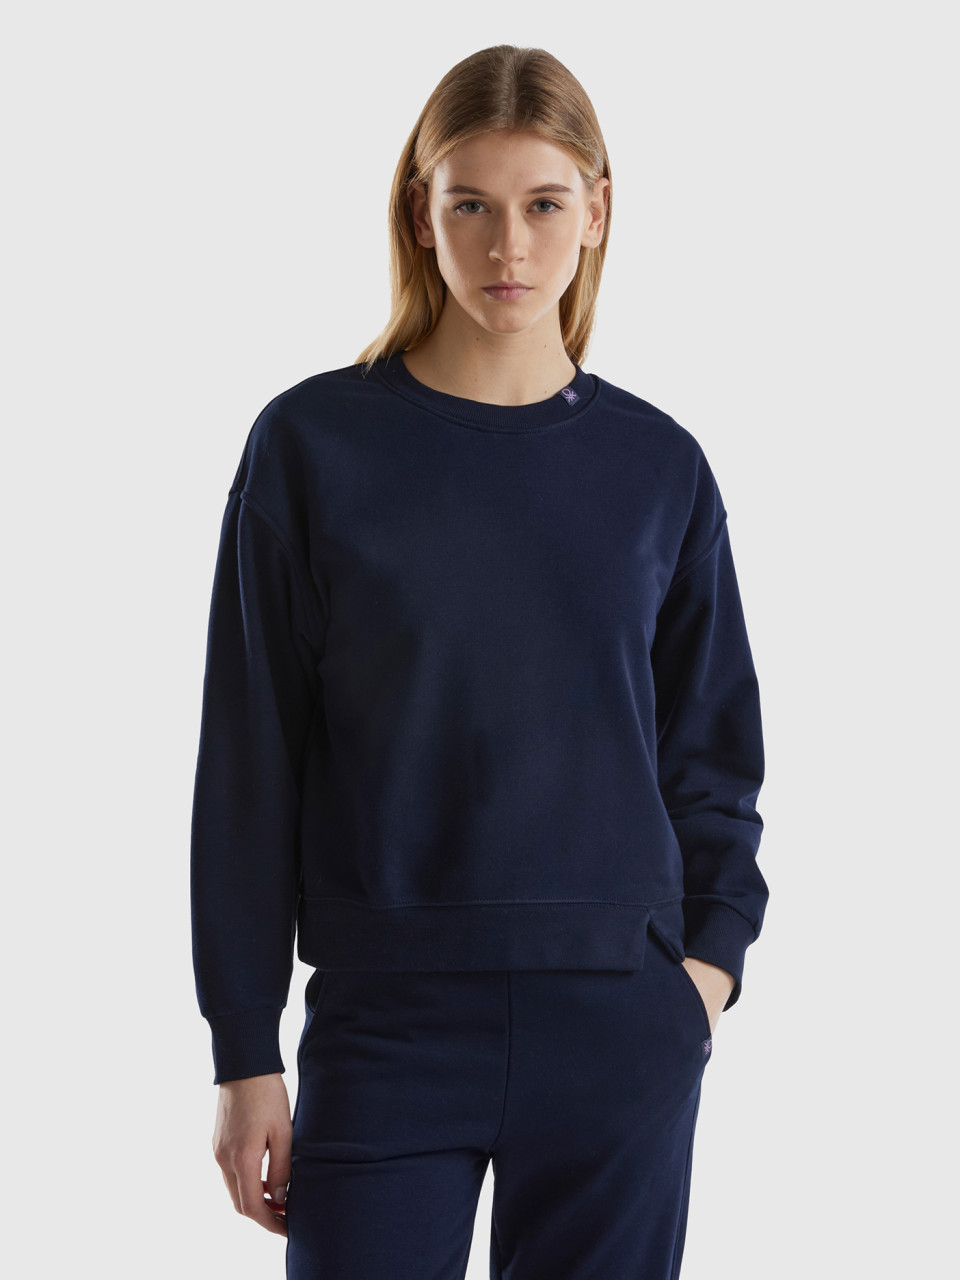 Benetton, Pullover Sweatshirt In Cotton Blend, Dark Blue, Women